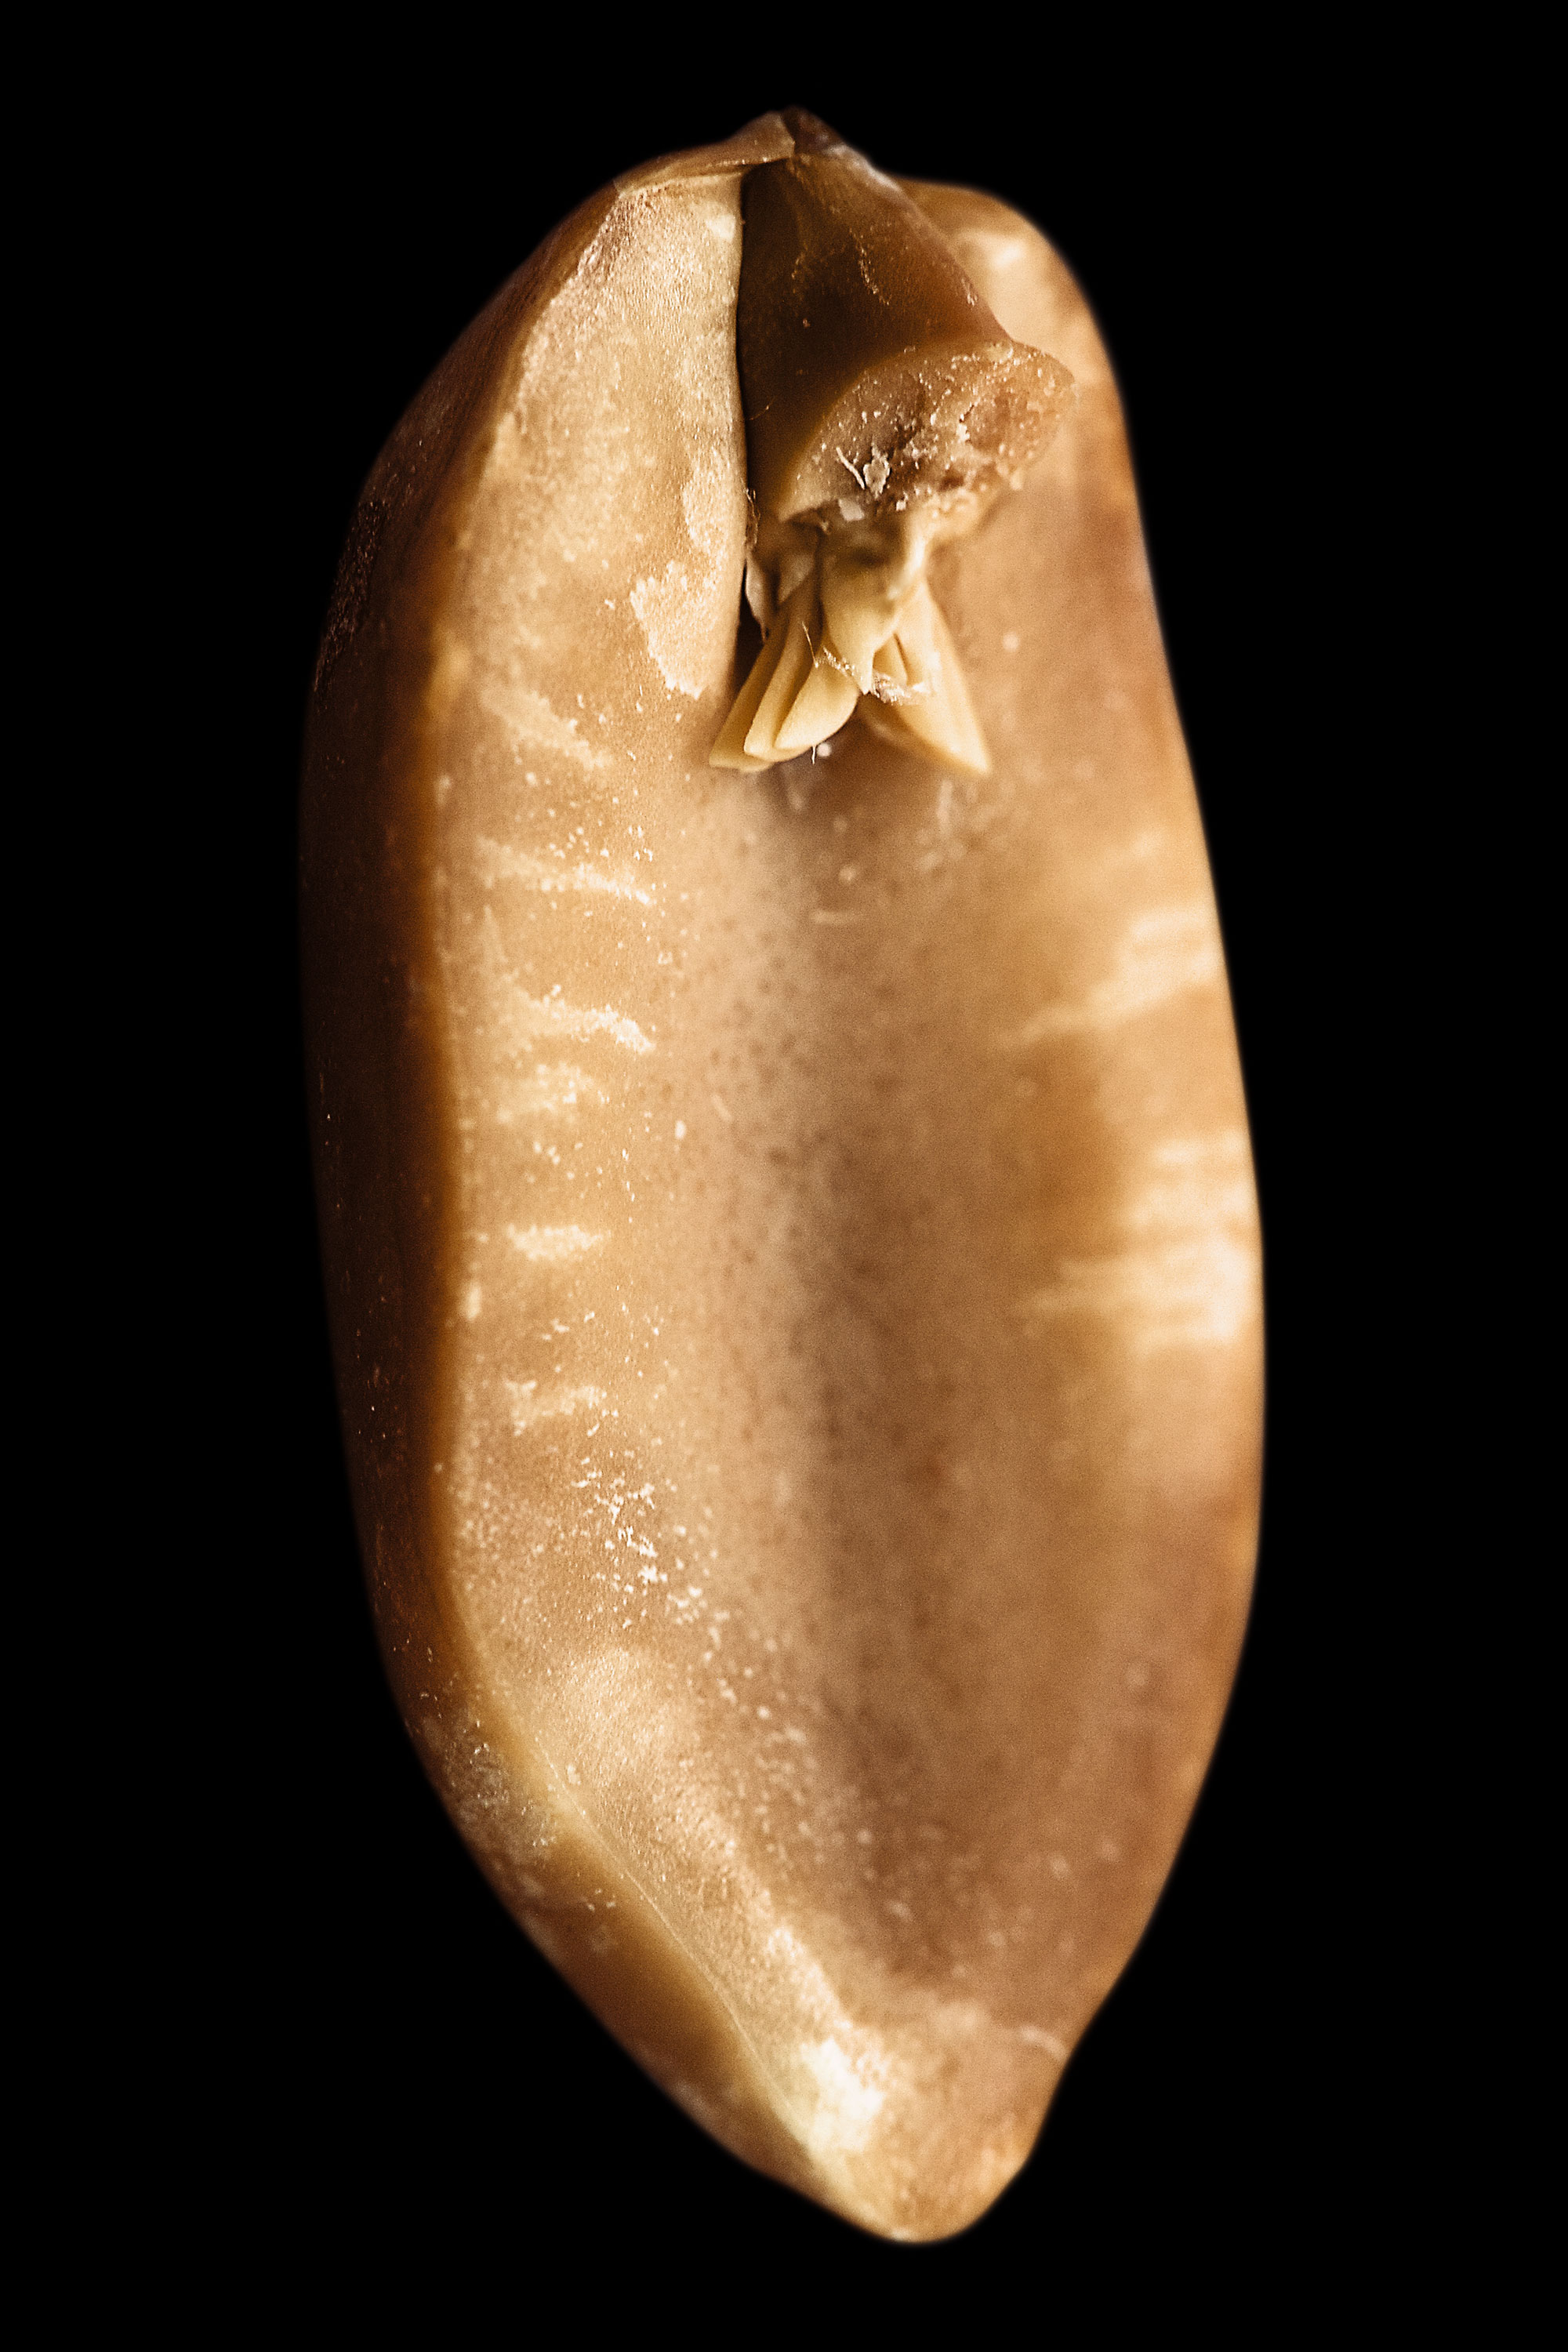 Art, A. hypogaea albus (peanut elf), fig. 1, 2008